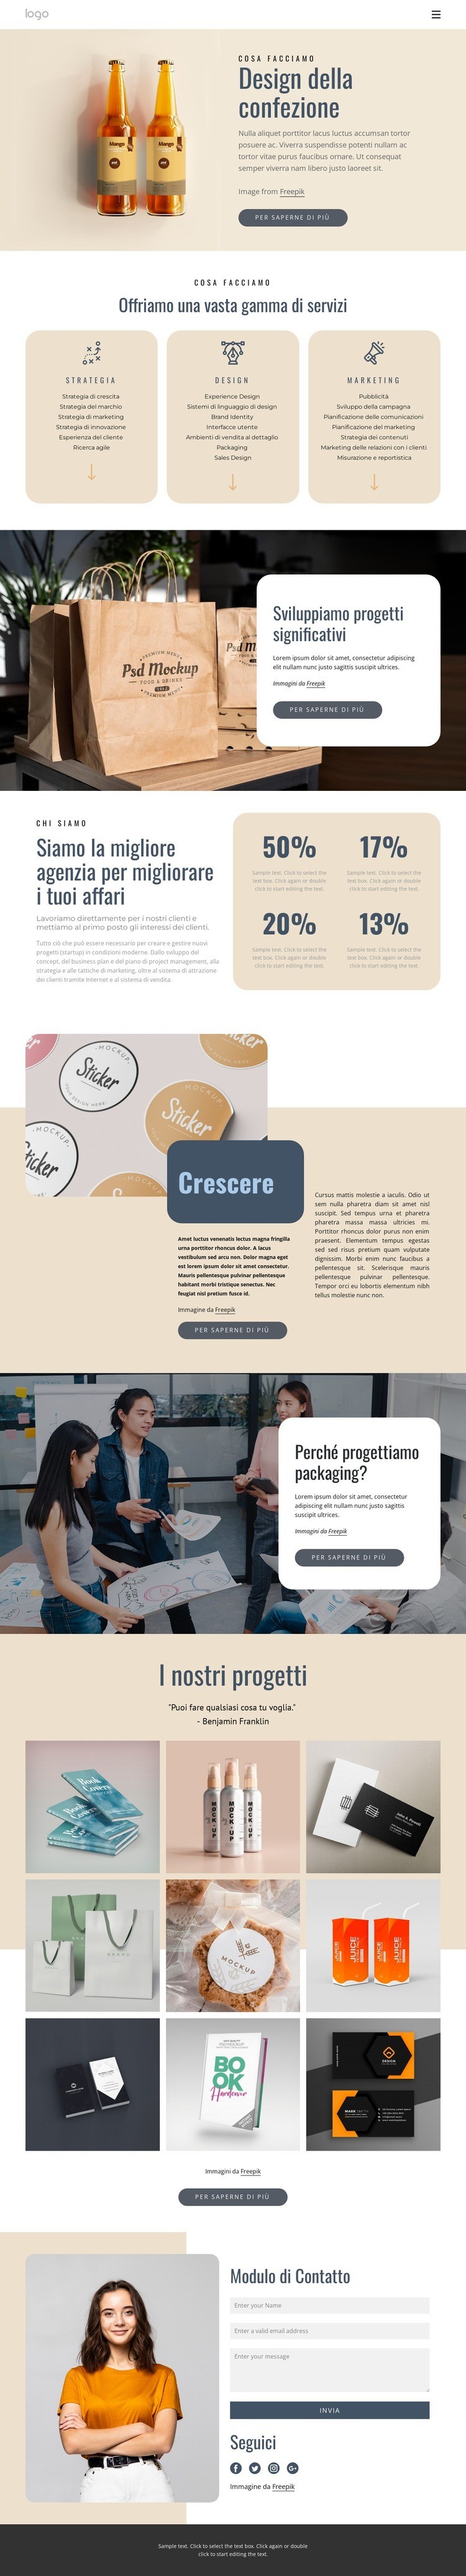 Design del marchio e del packaging Progettazione di siti web